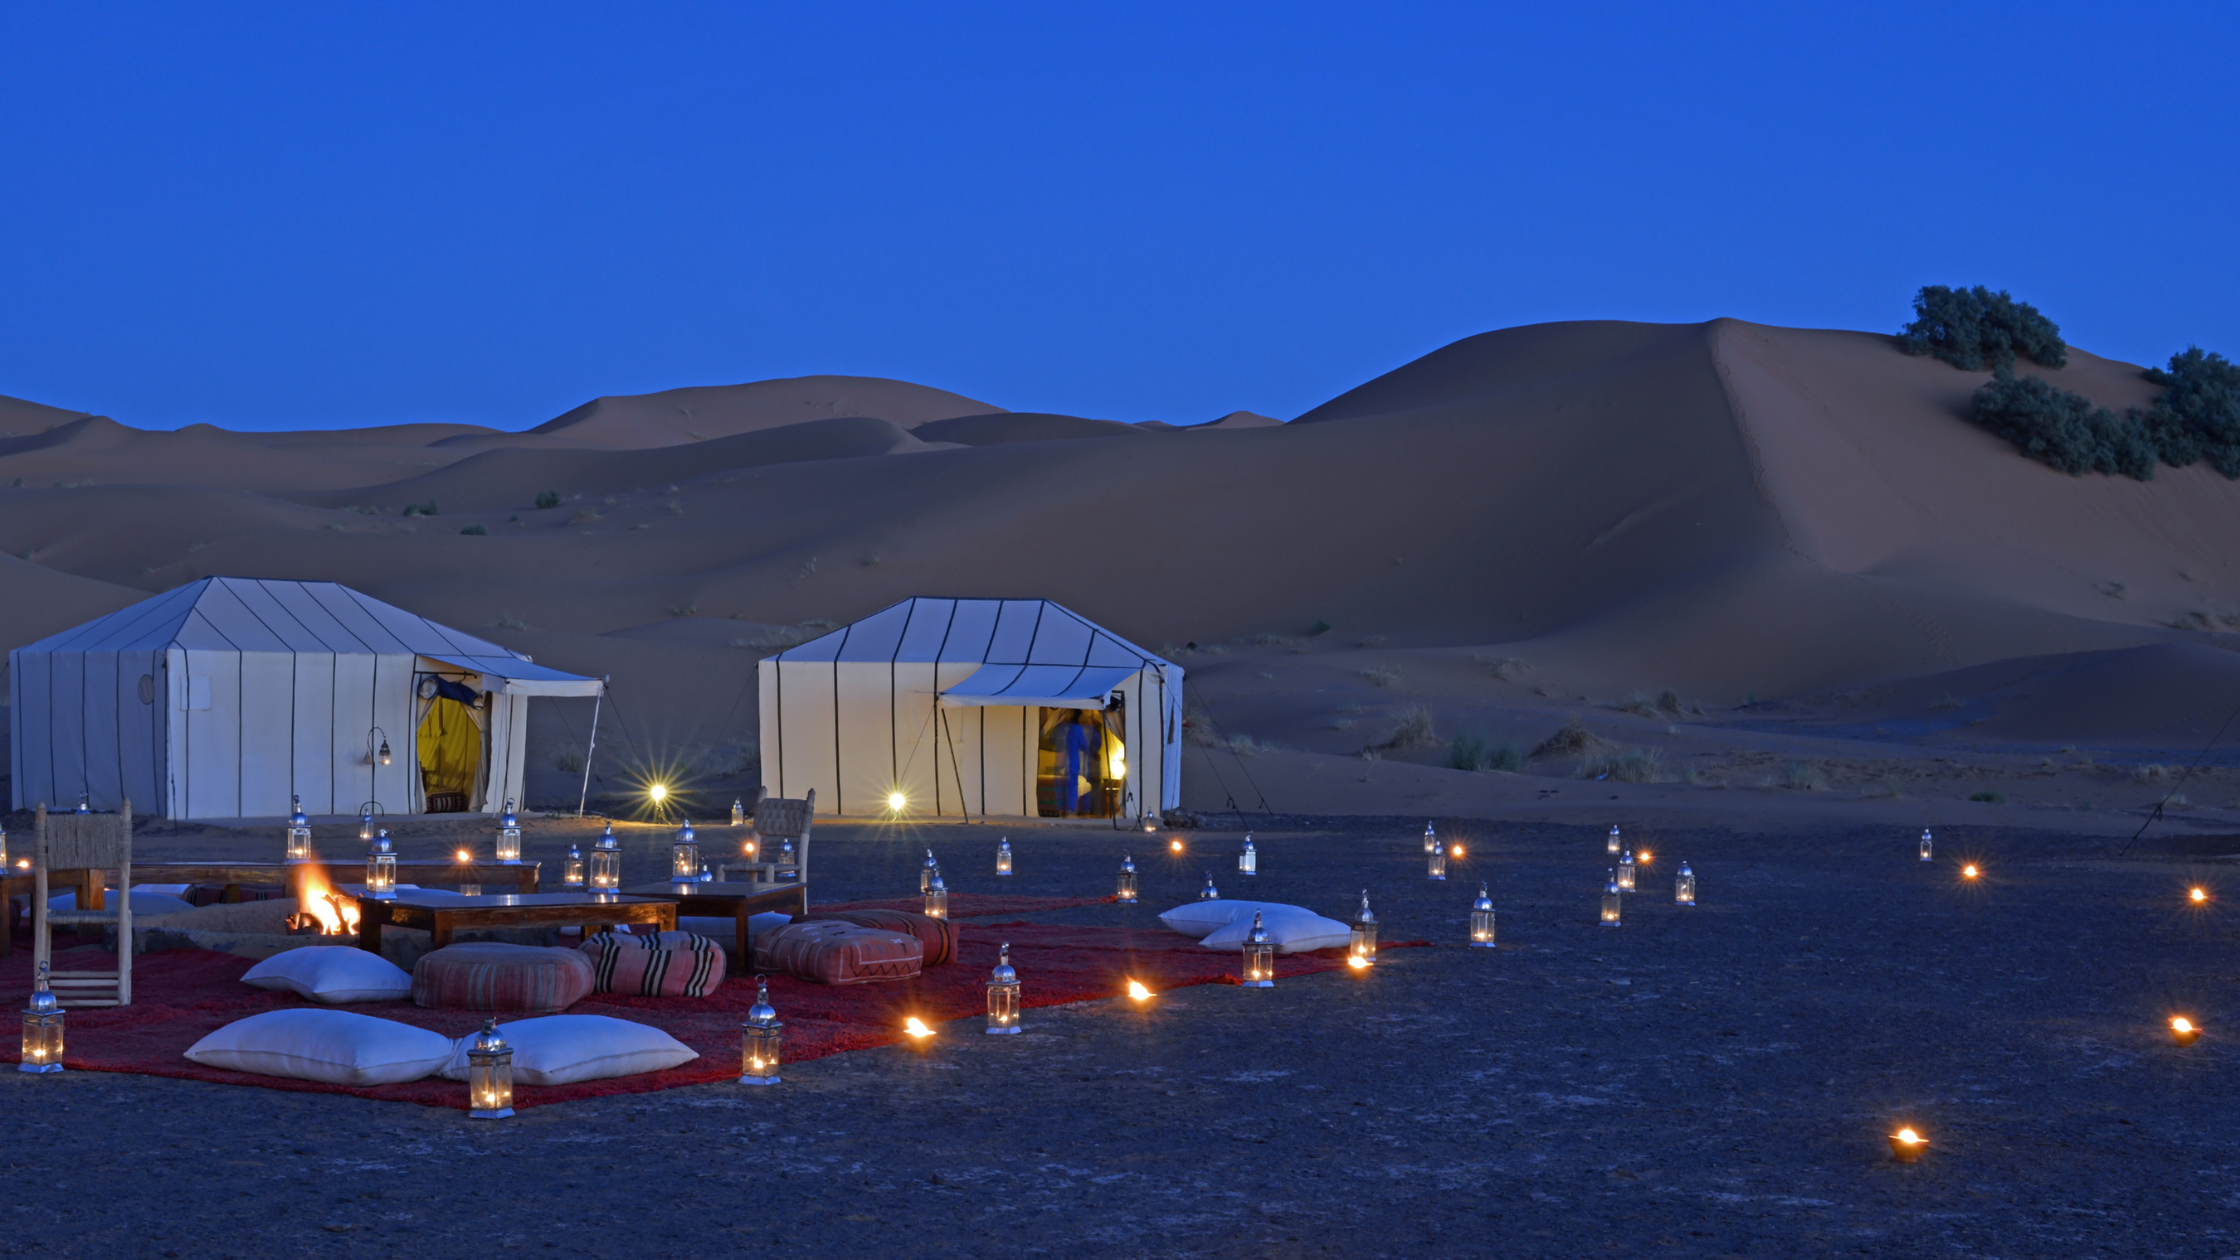 Spending the night in the desert